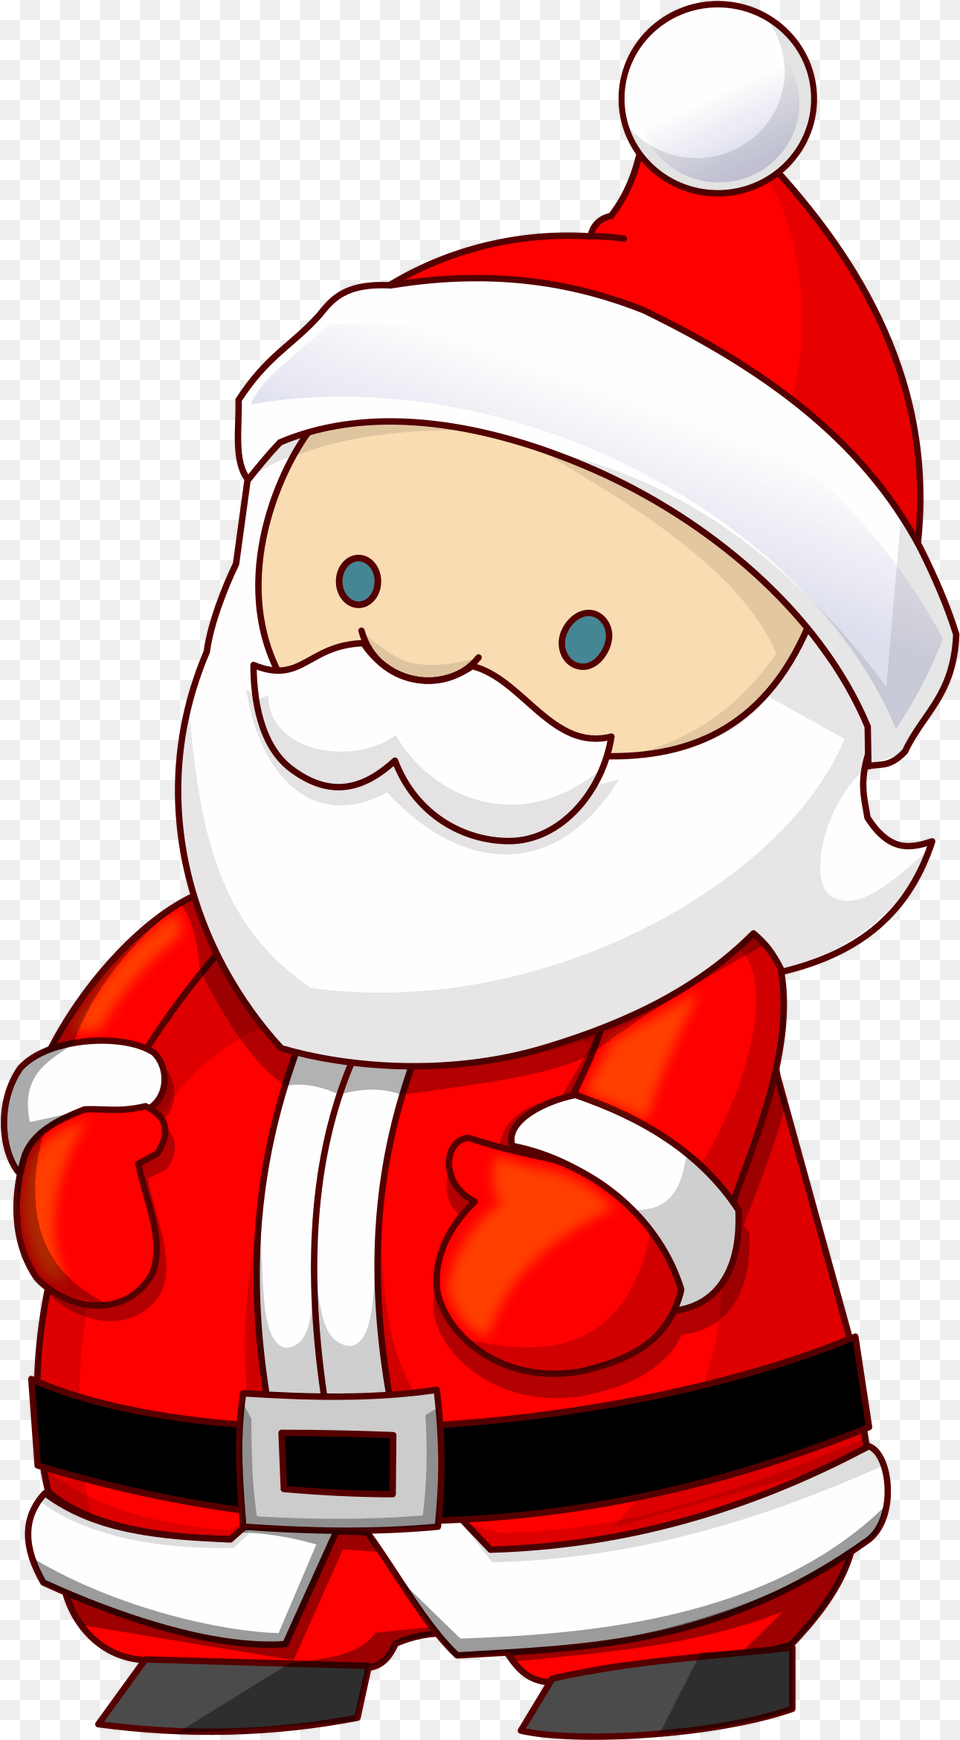 Santa Claus Small, Clothing, Lifejacket, Vest, Elf Free Png